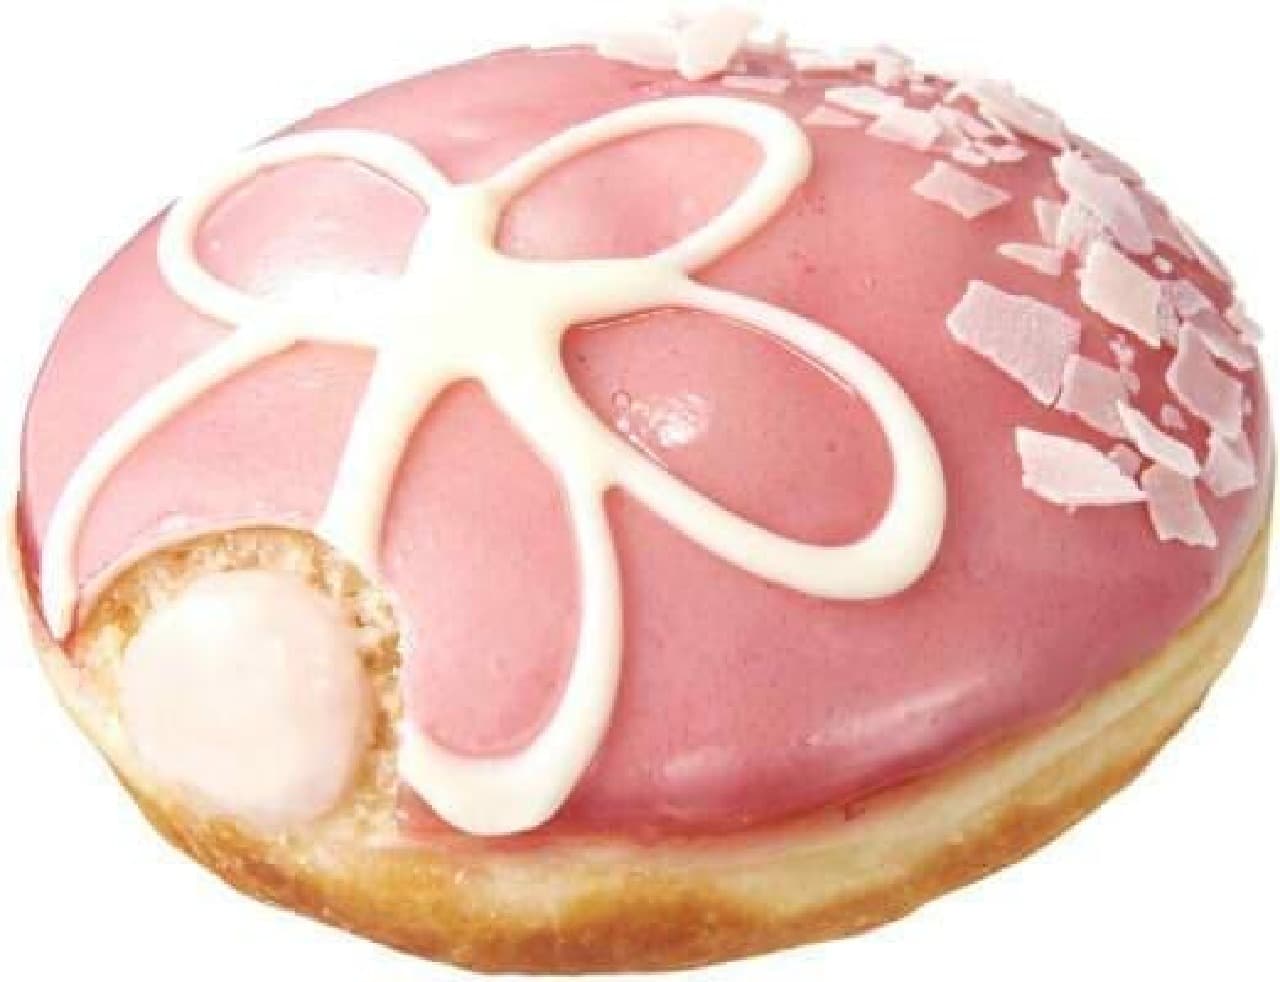 Spring donuts for KKD! (The image is "Sakura")